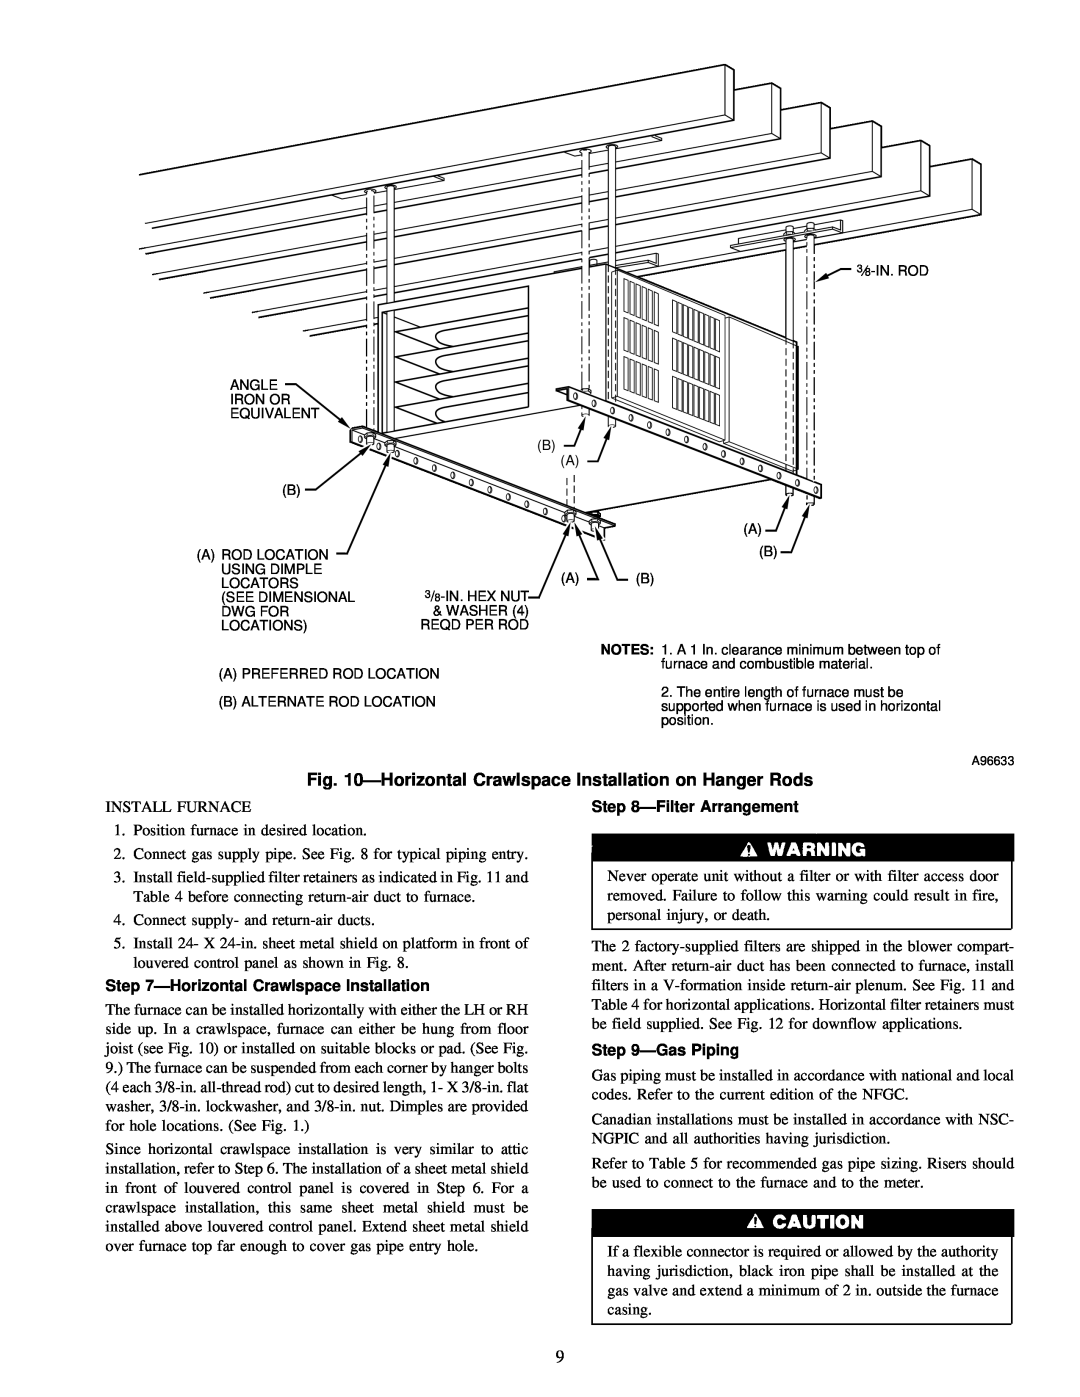 Carrier 58ZAV operating instructions ÐHorizontal Crawlspace Installation, ÐFilter Arrangement, ÐGas Piping 